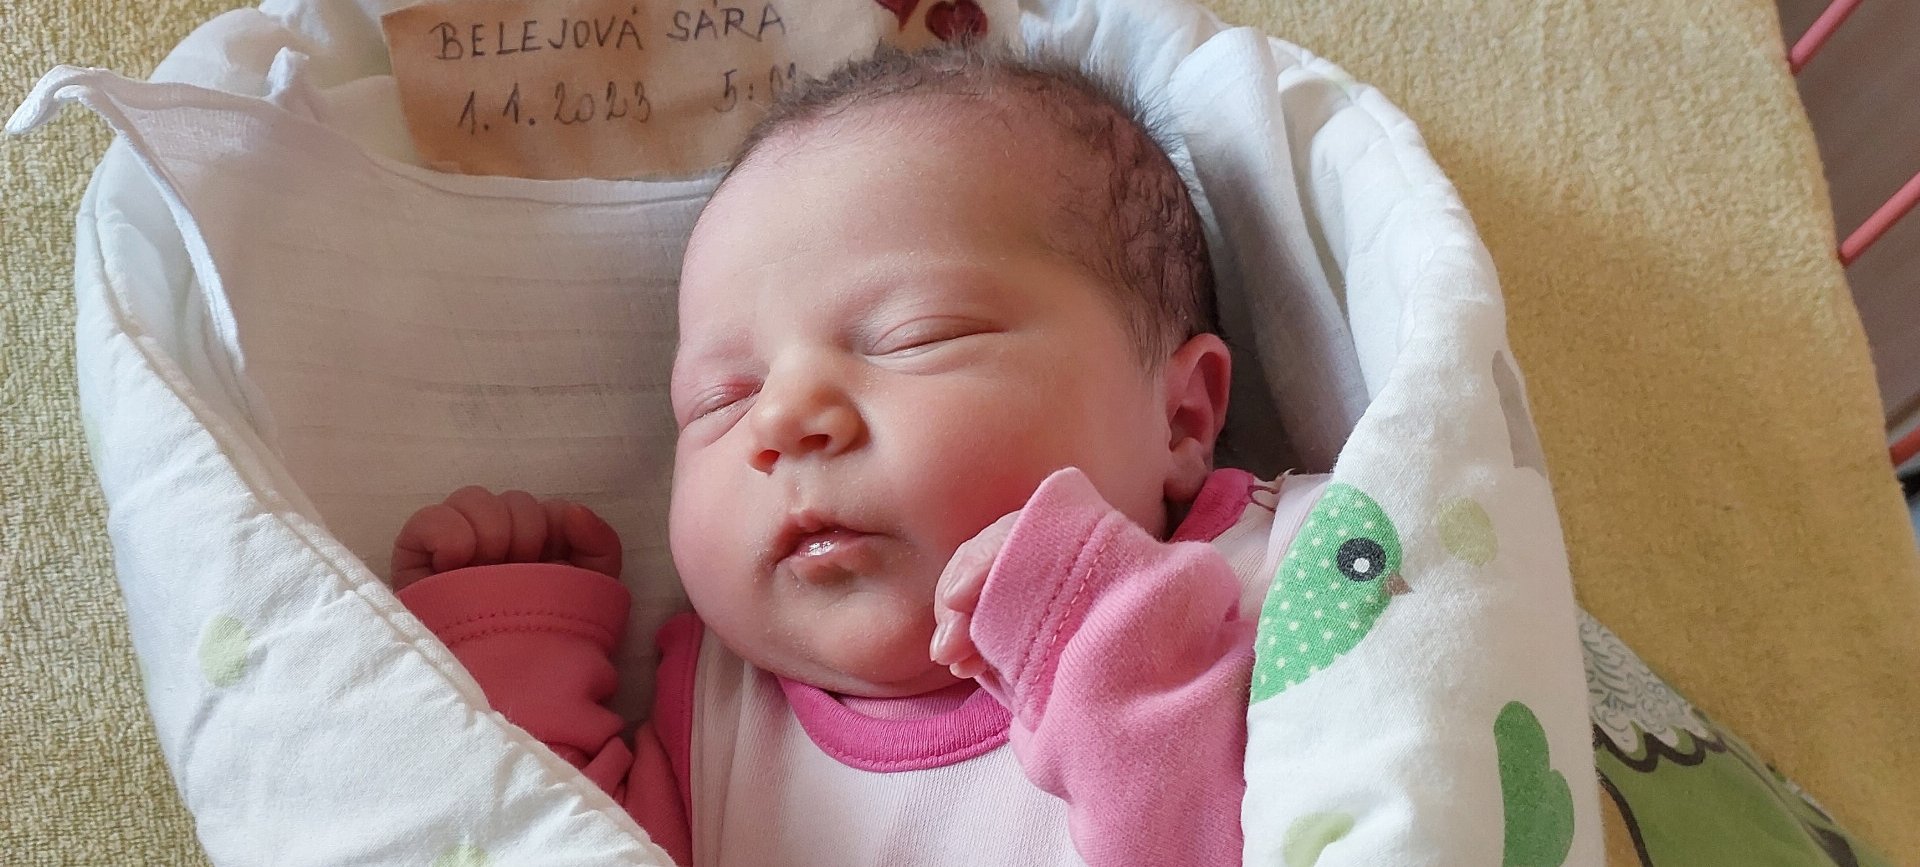 Sára je prvním miminkem roku 2023 v okrese Bruntál